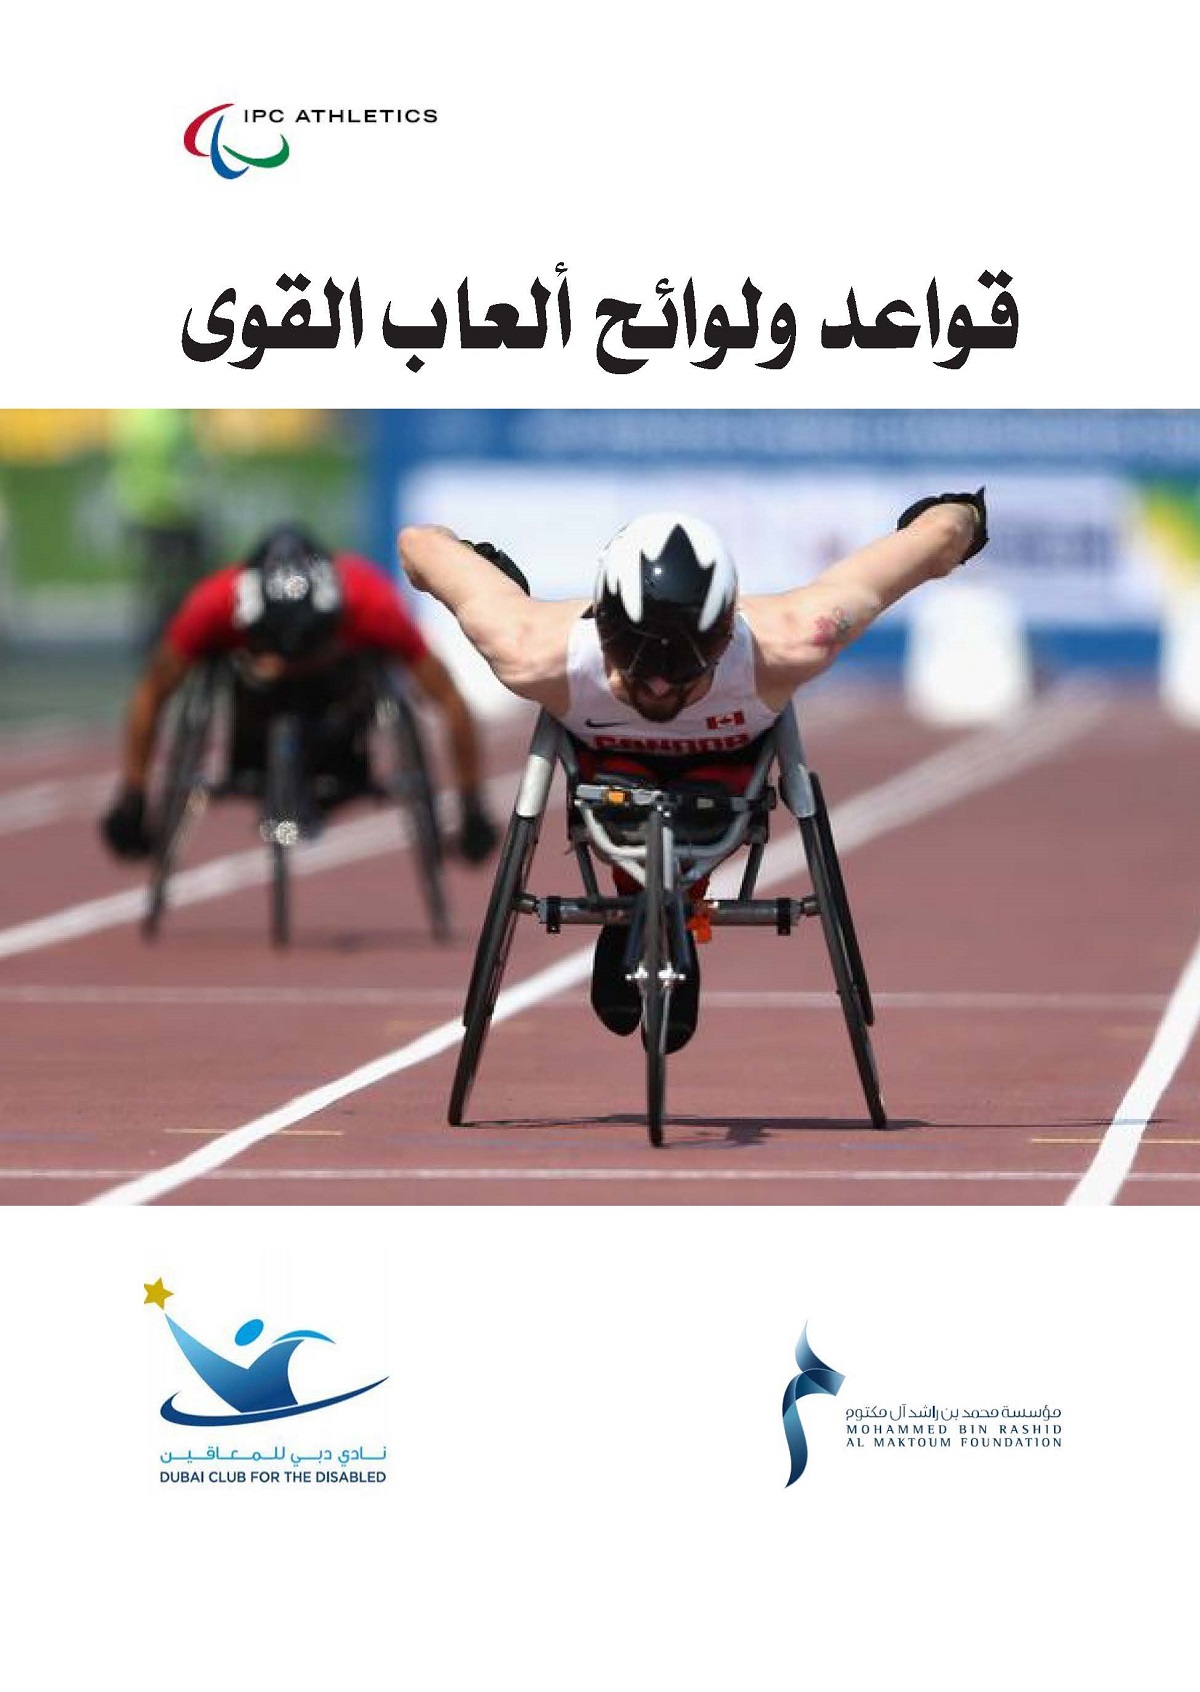 المؤسسة تنهي ترجمة قوانين الألعاب البارالمبية تمهيداً لطرحها باللغة العربية على مواقع الاتحادات  العالمية